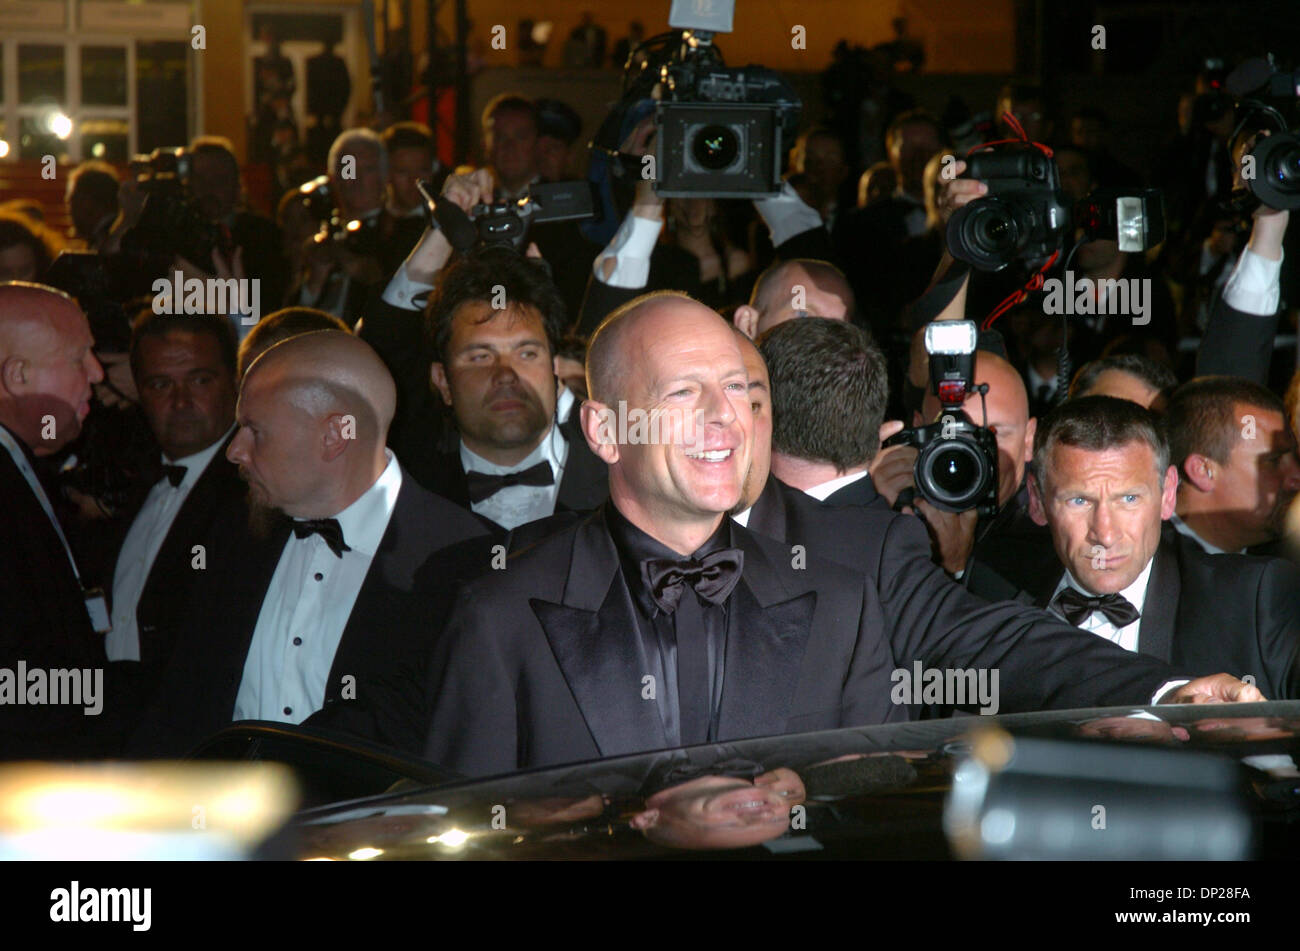 Maggio 21, 2006; Cannes, Francia; attore Bruce Willis al 'oltre la siepe' premiere alla 59a Cannes Film Festival. Credito: Foto di Frederic Injimbert/ZUMA premere. (©) Copyright 2006 by Frederic Injimbert Foto Stock